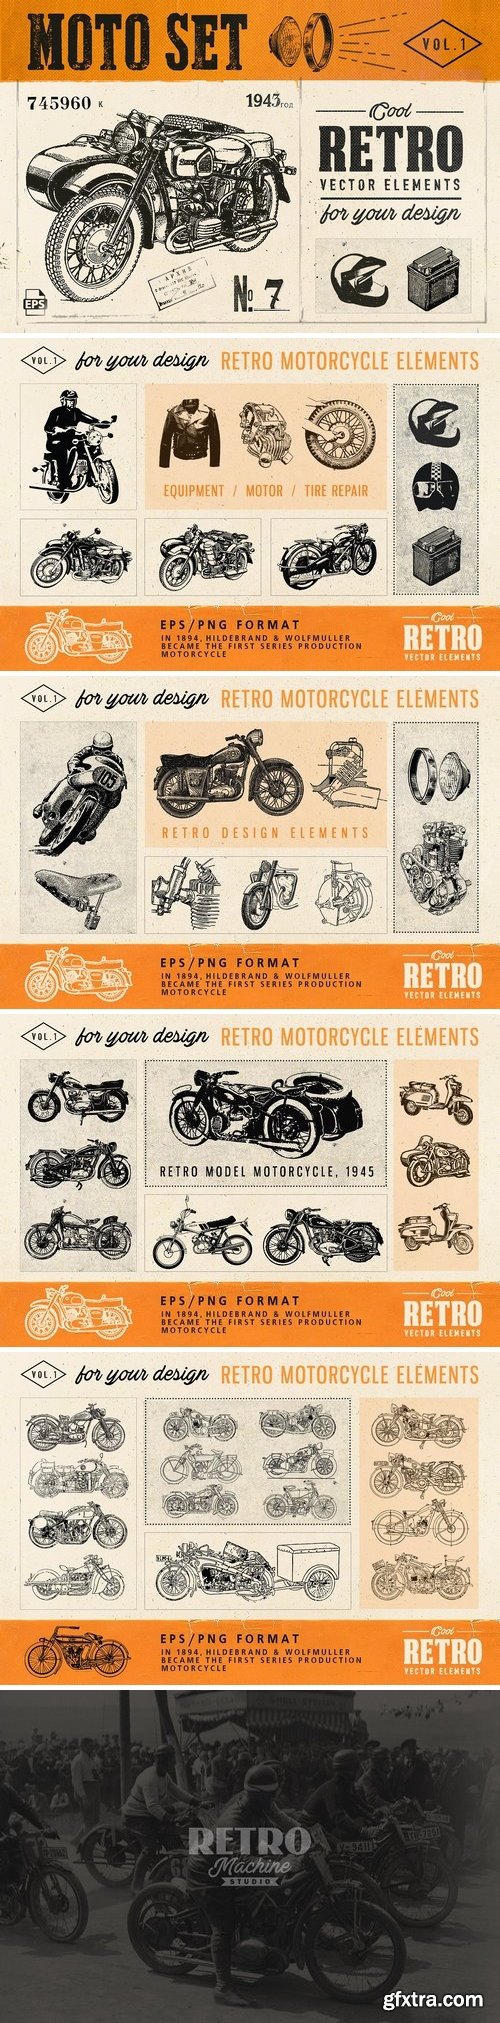 CM - Motorcycle Retro Set 1735449